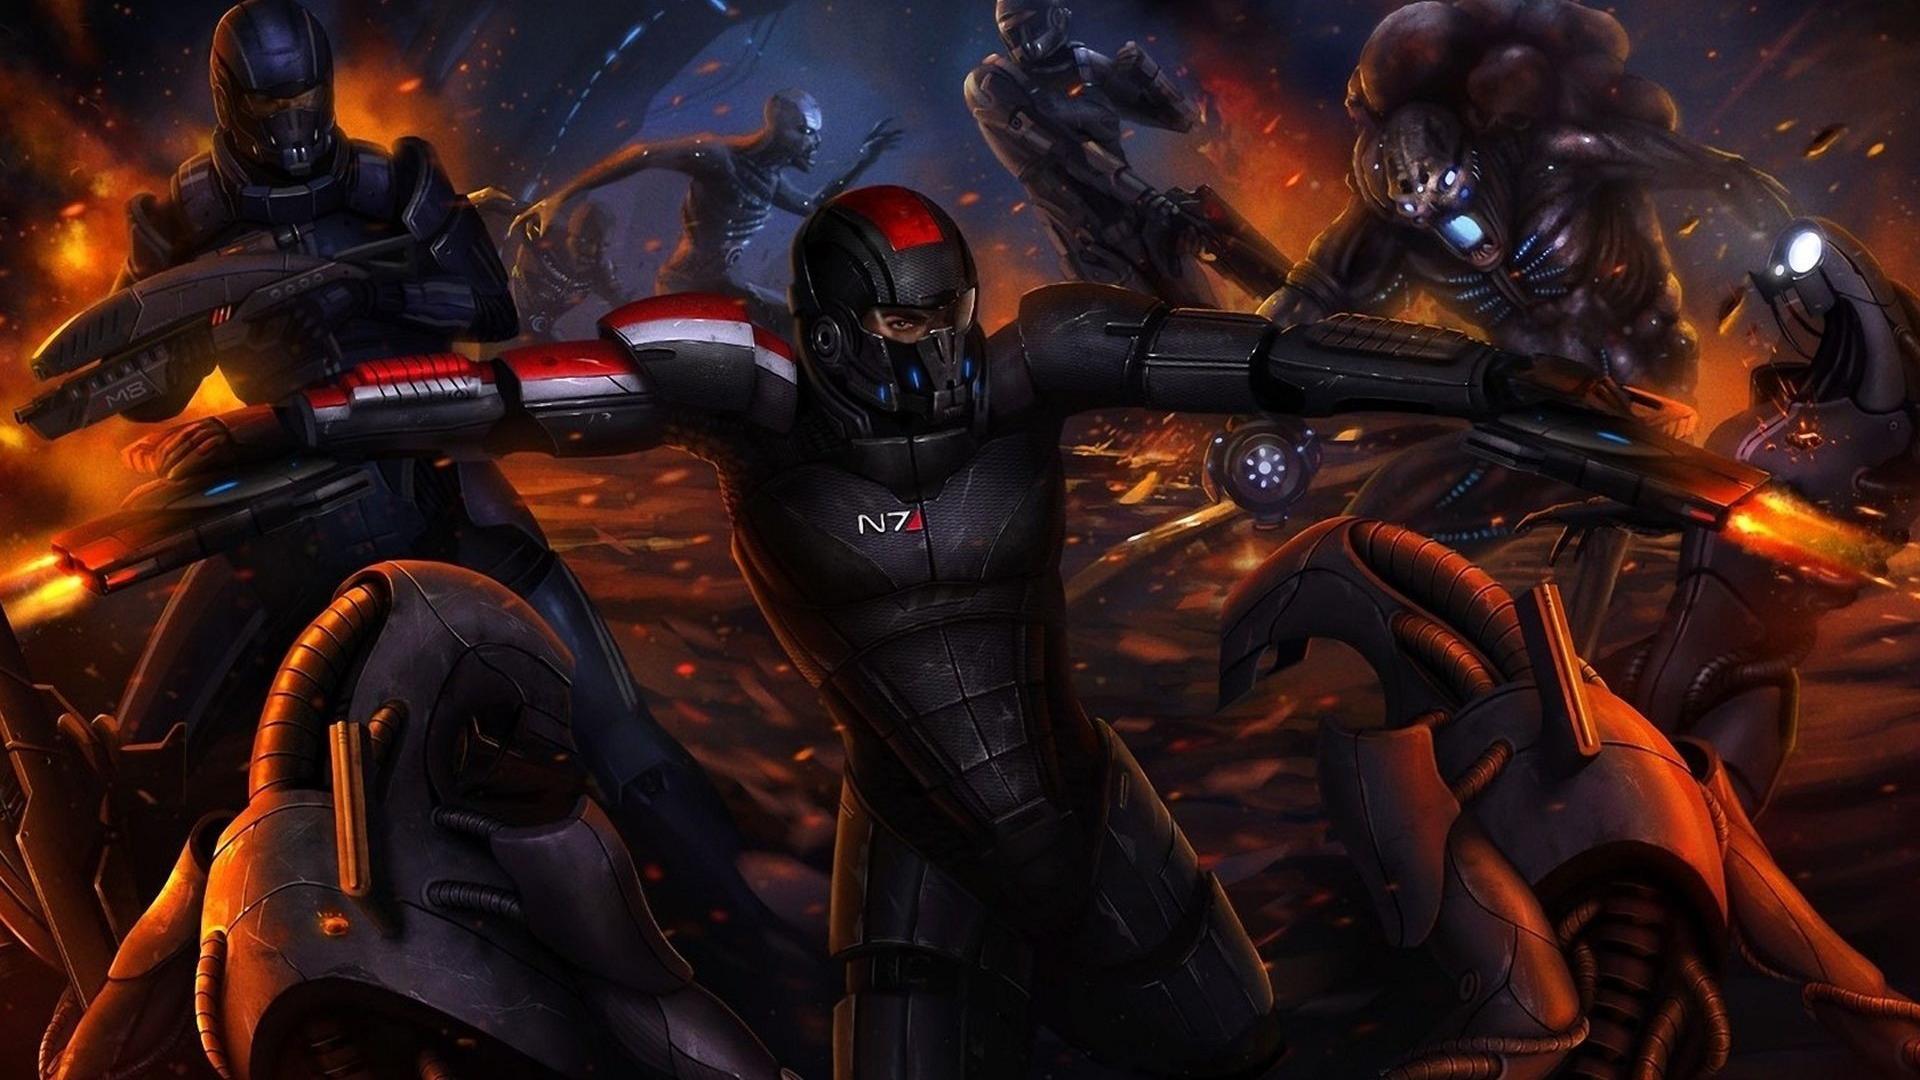 Mass Effect 3 Extended Cut Wallpaper. Mass Effect 3 Extended